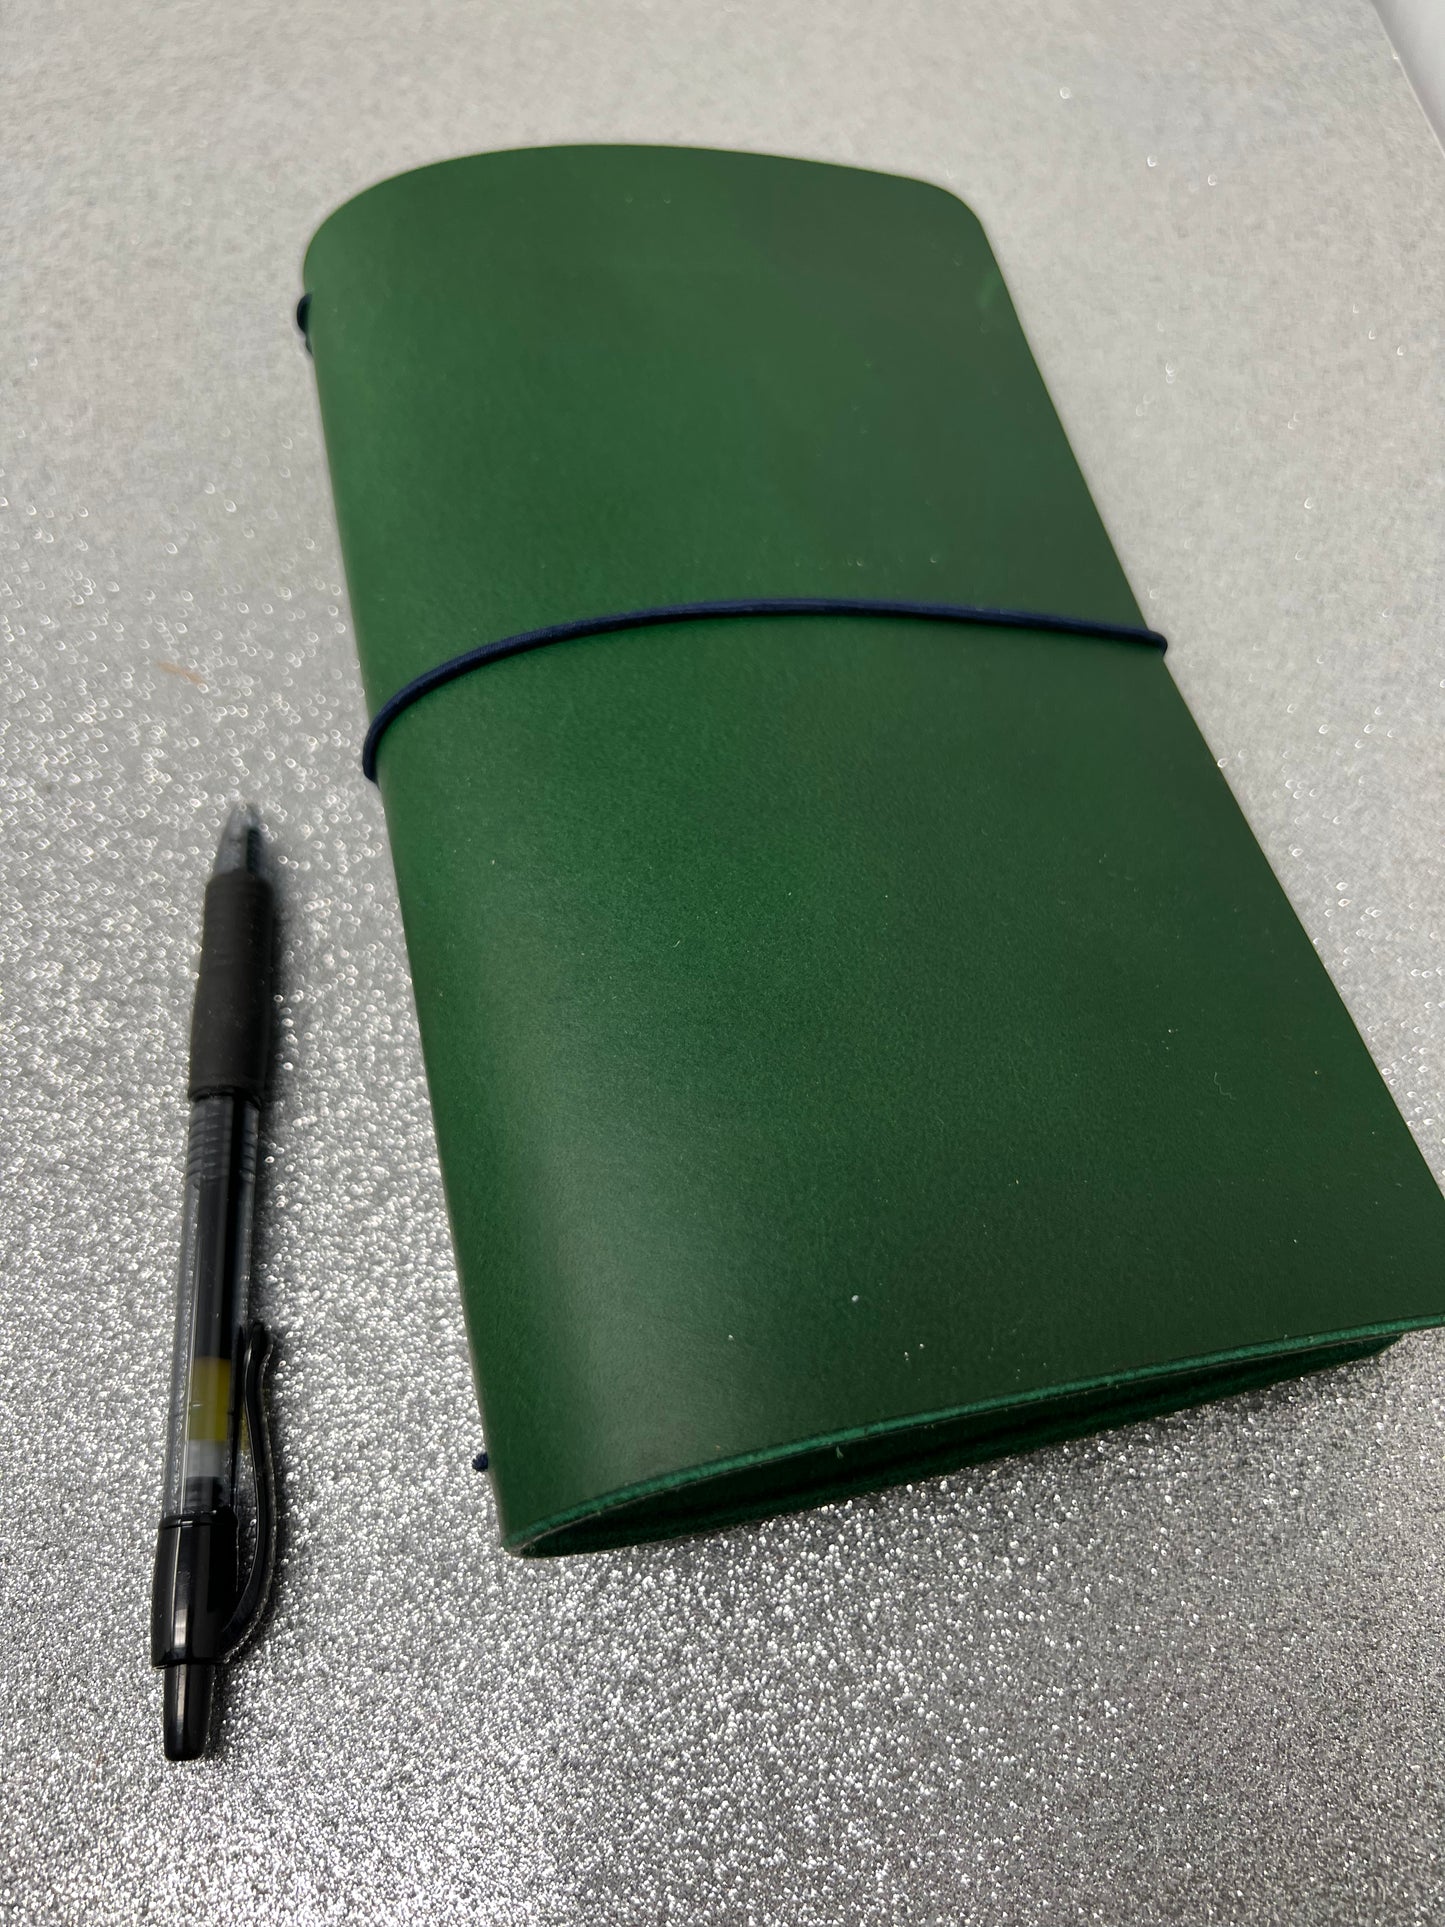 Midori Regular TN, Evergreen Bridle Traveler’s Notebook, Bullet Journal Cover